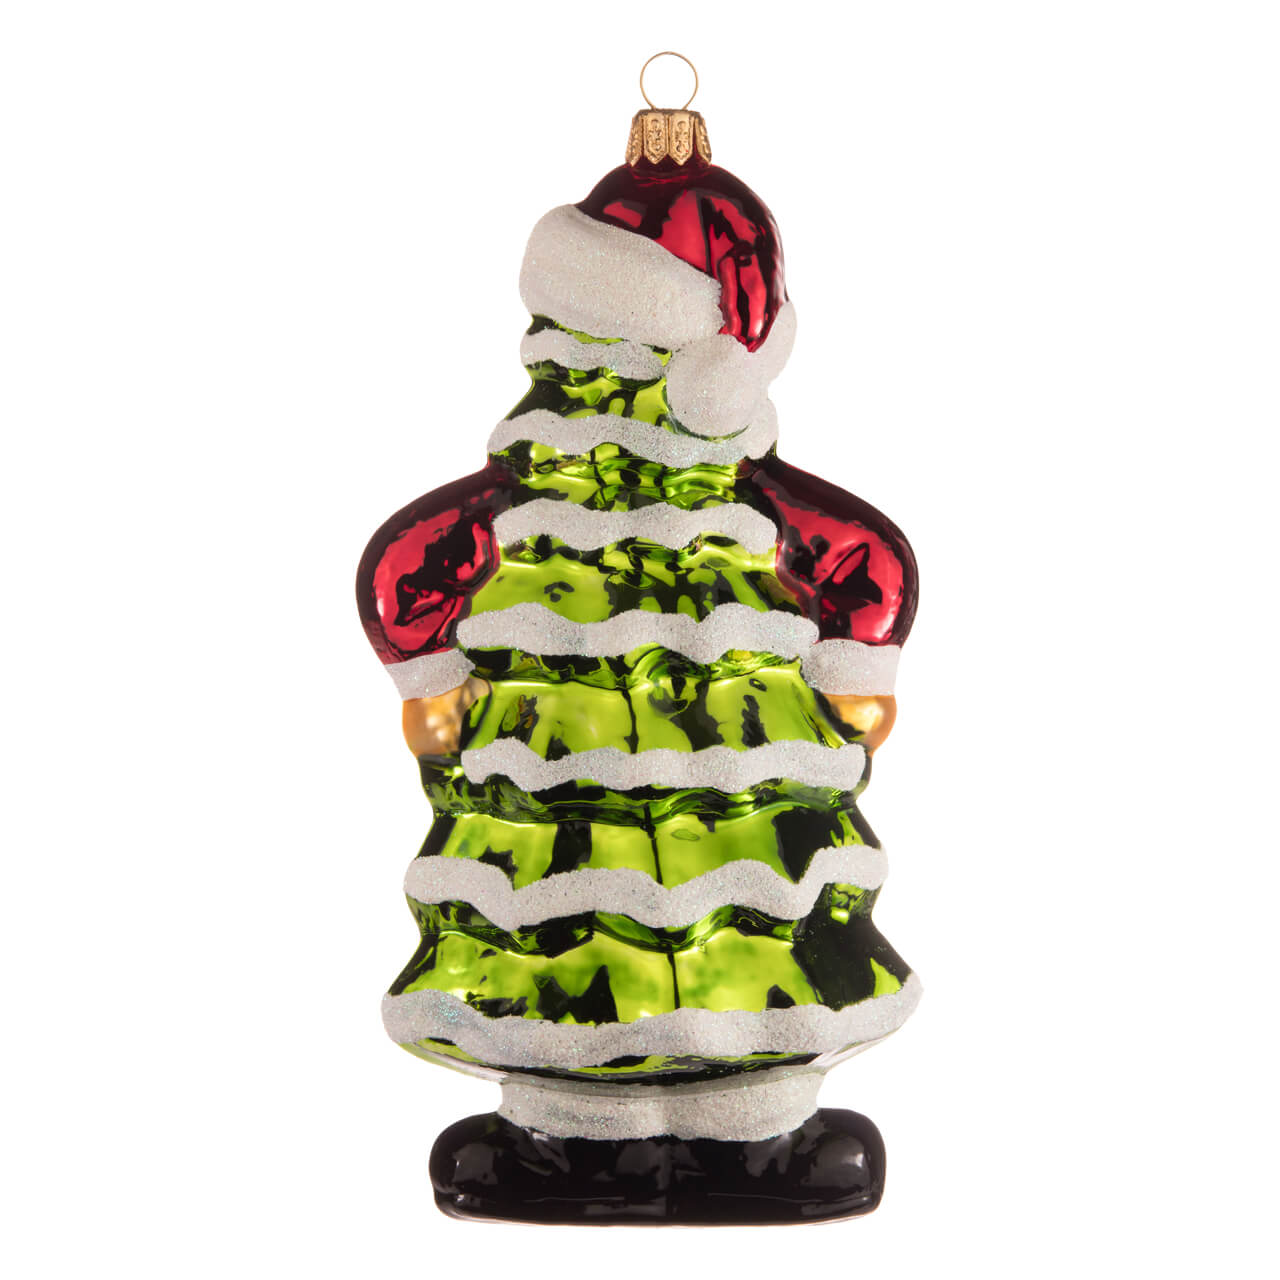 Santa Claus in a fir tree dress